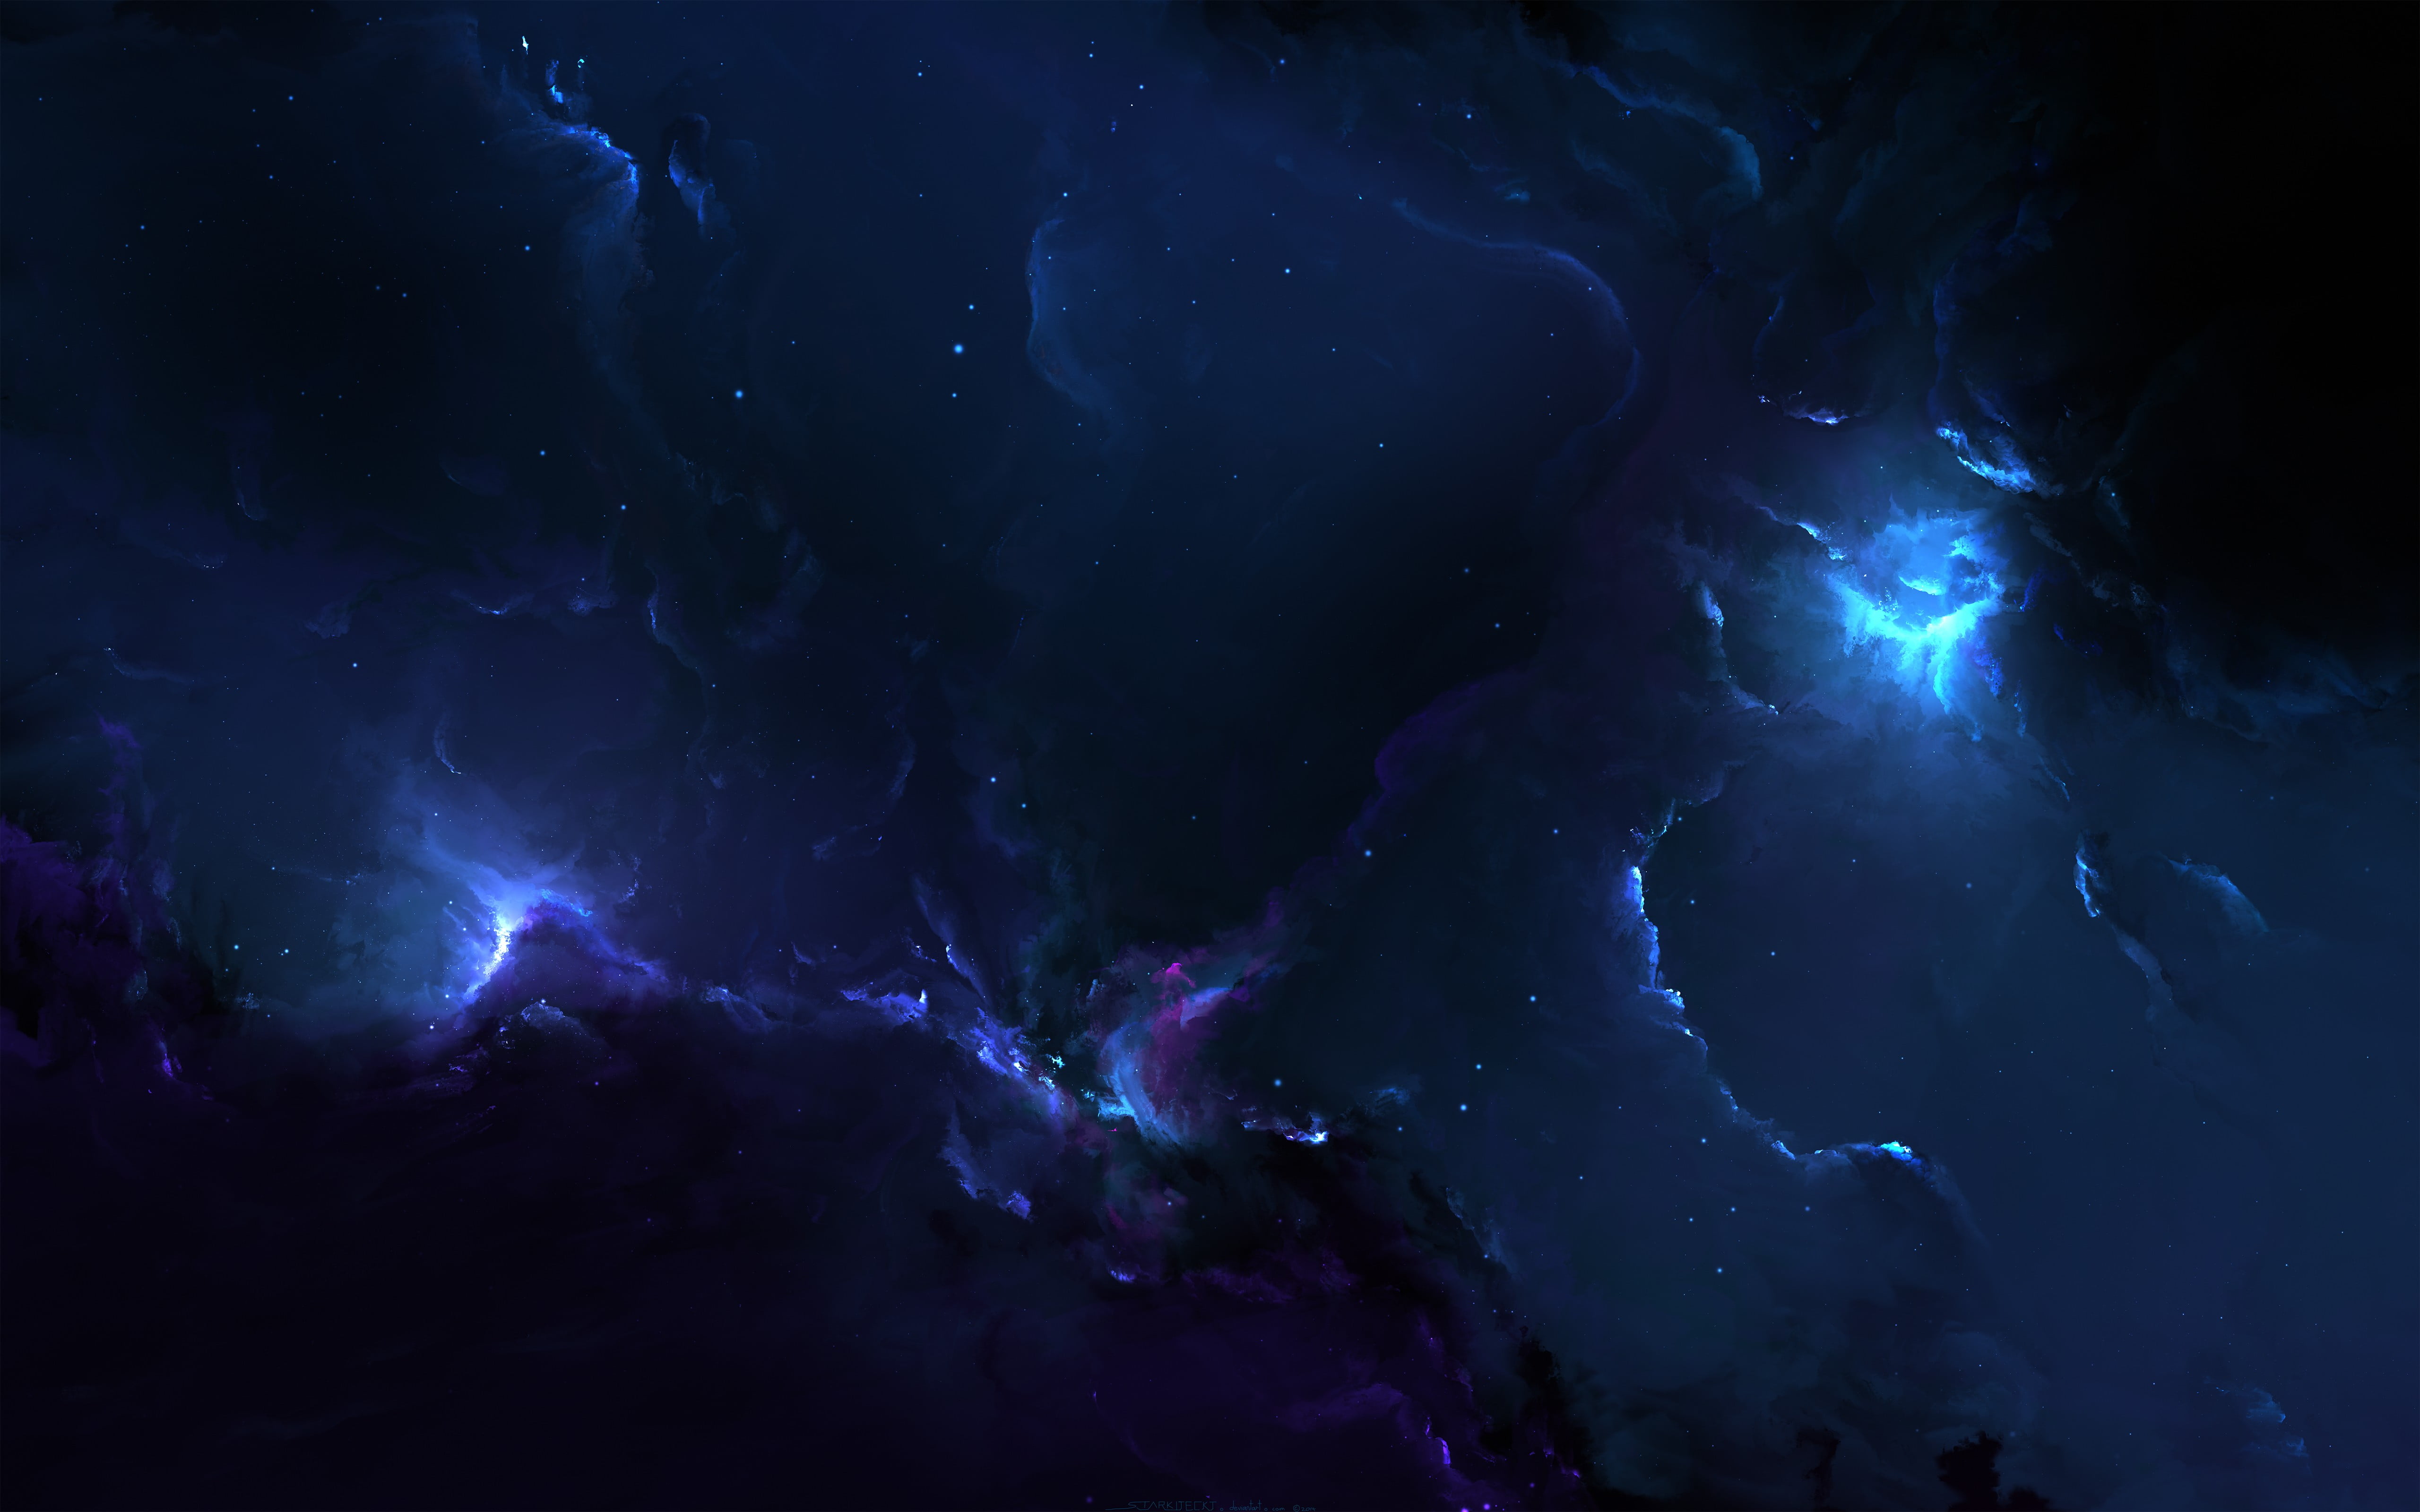 blue and purple nebula wallpaper, galaxy, Starkiteckt, space art, nebula